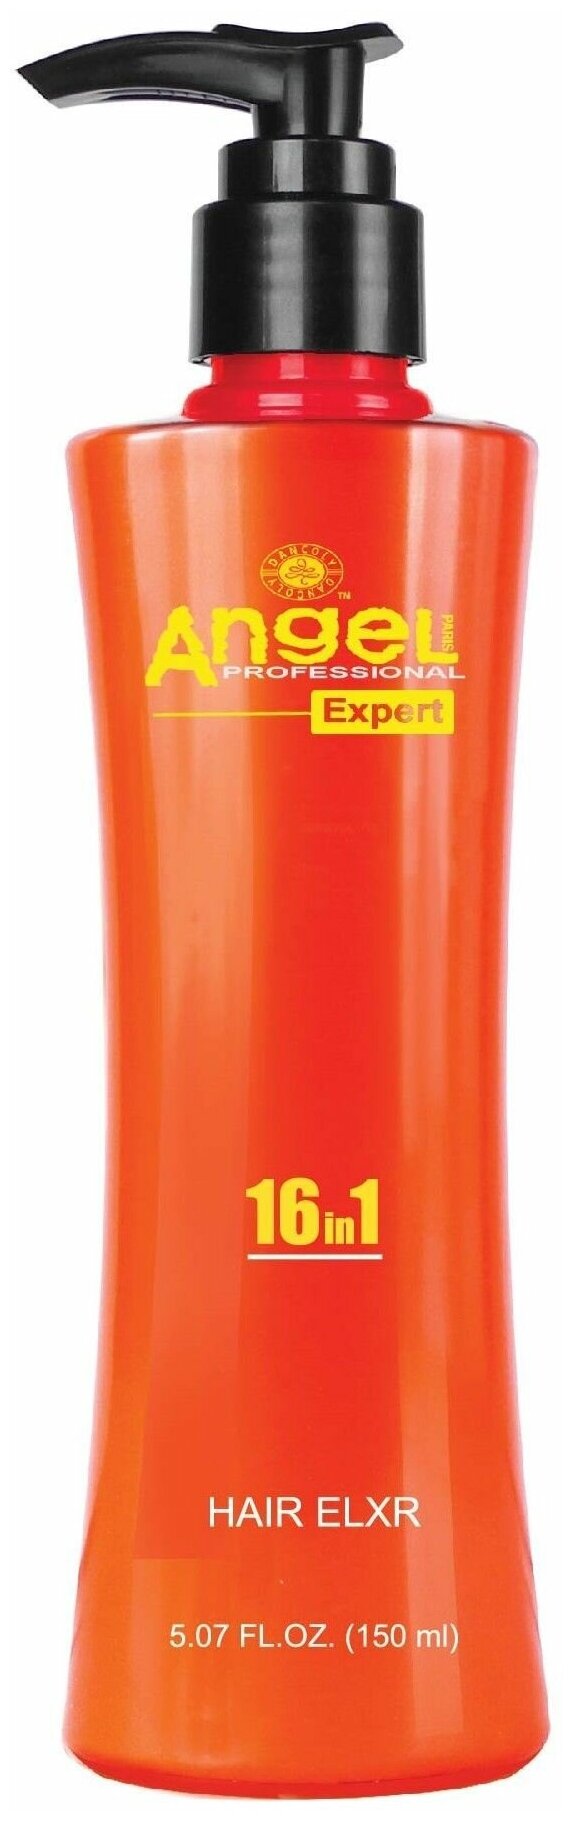 Angel Expert Крем для волос 16 в 1 для защиты и блеска волос с дозатором Hair Elxr, 150 мл